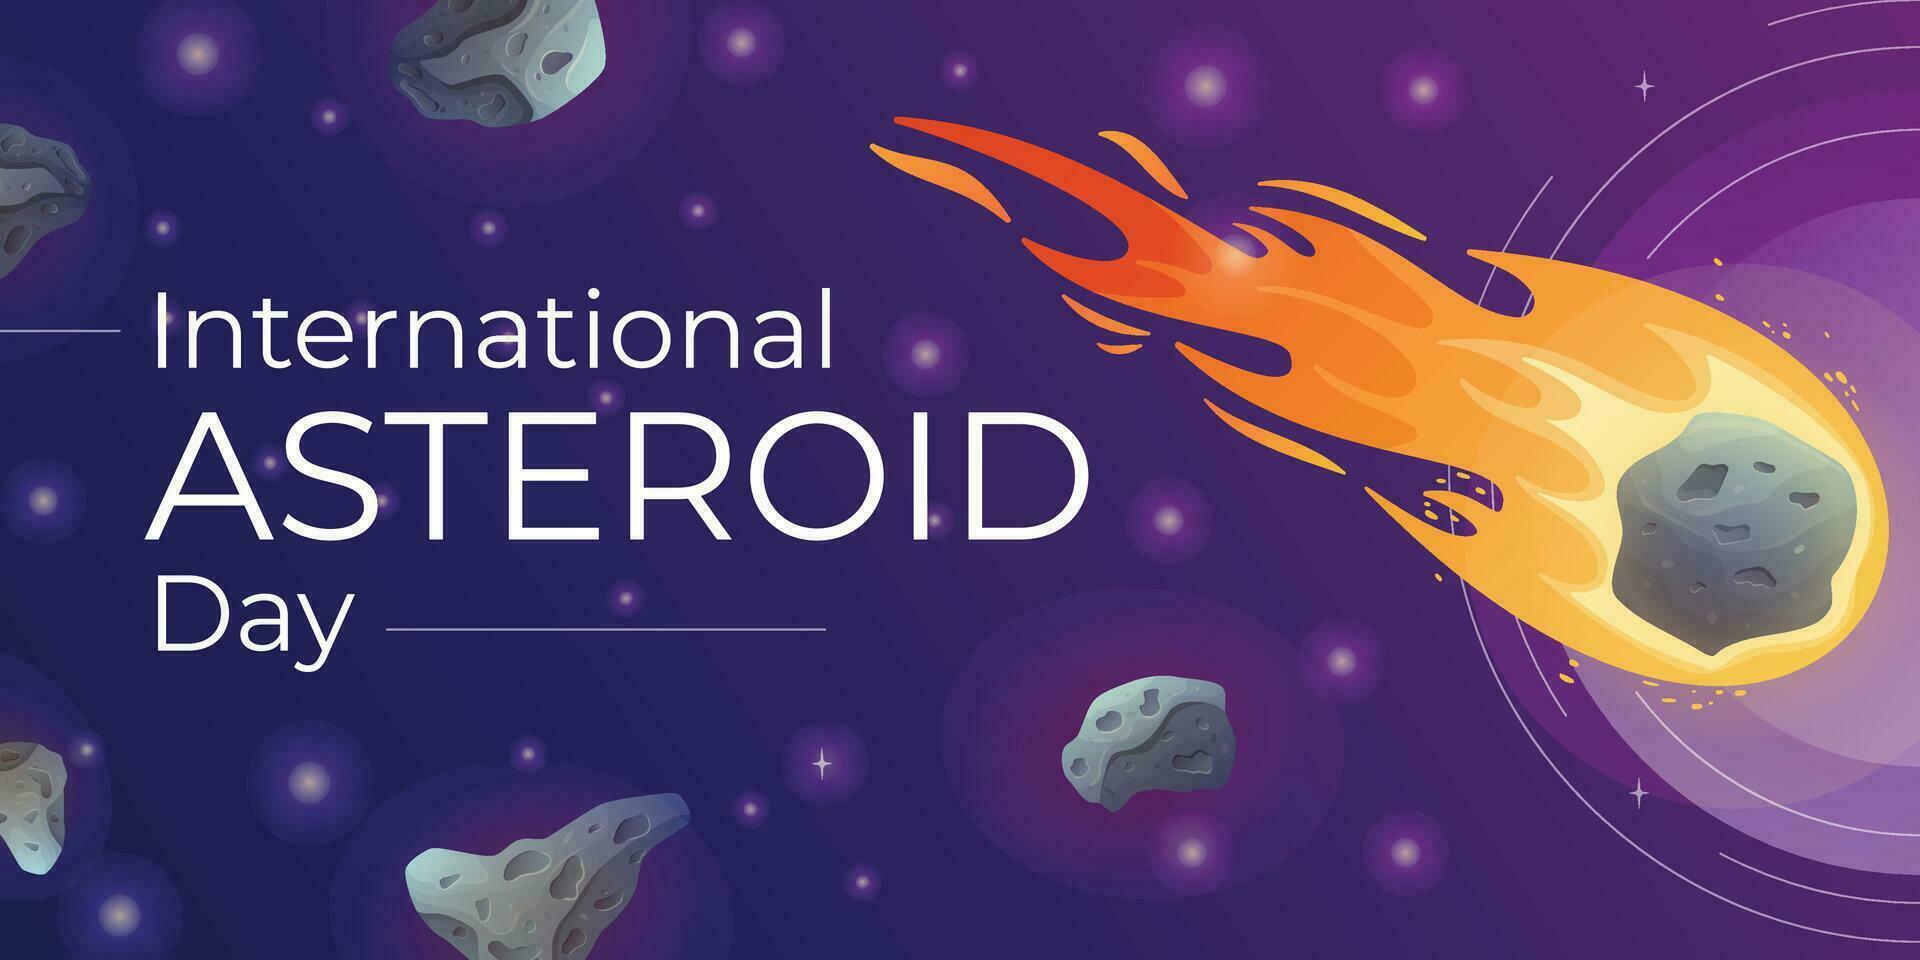 internazionale mondo giugno vacanza asteroide giorno. vettore cartone animato spazio bandiera con meteoriti e stelle.